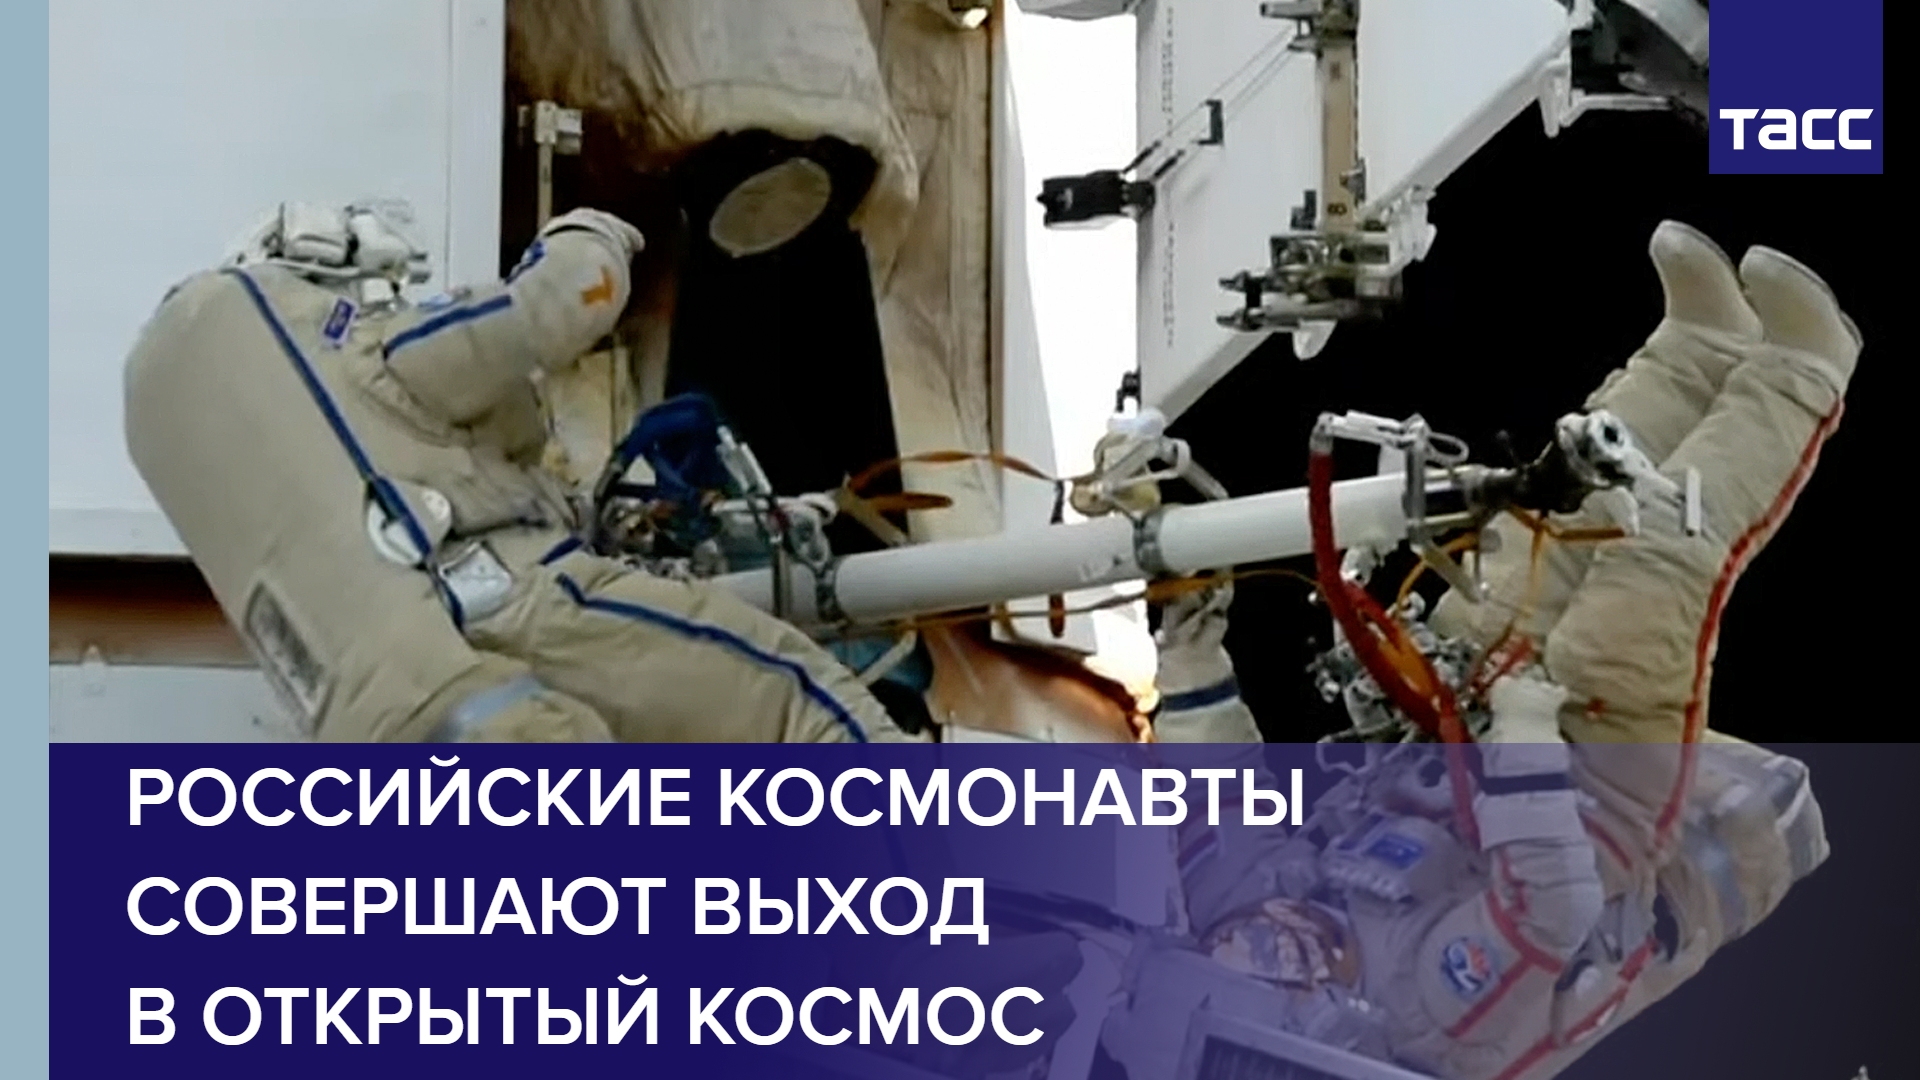 Российские космонавты совершают выход в открытый космос